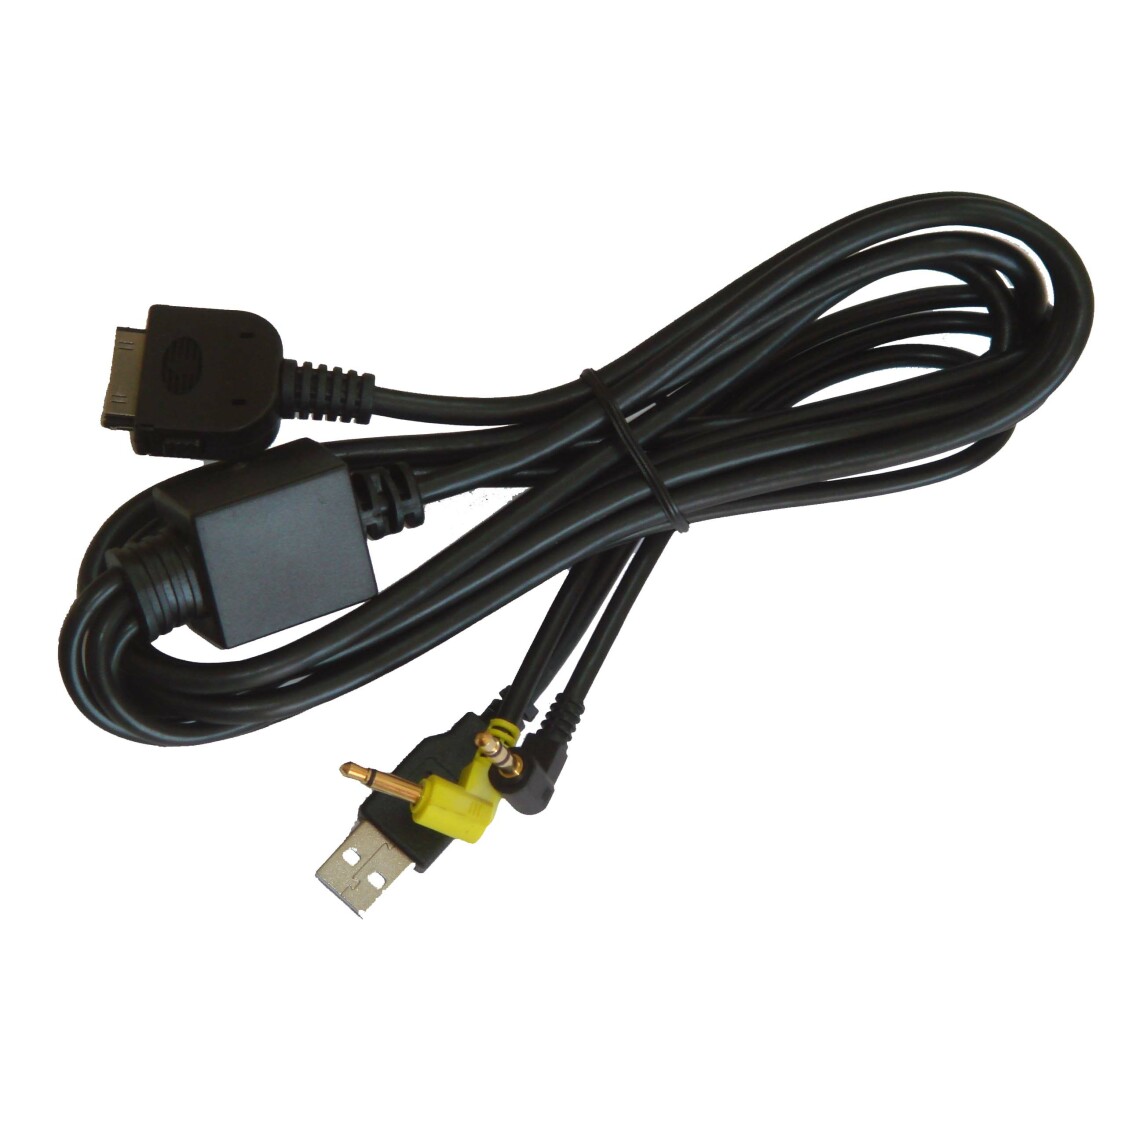 Vhbw - vhbw Câble adaptateur de ligne AUX Radio compatible avec Kenwood DDX6034M, DDX6054, DDX7019, DDX7029, DDX7029Y, DDX7032 voiture - USB, prise jack - Alimentation modulaire